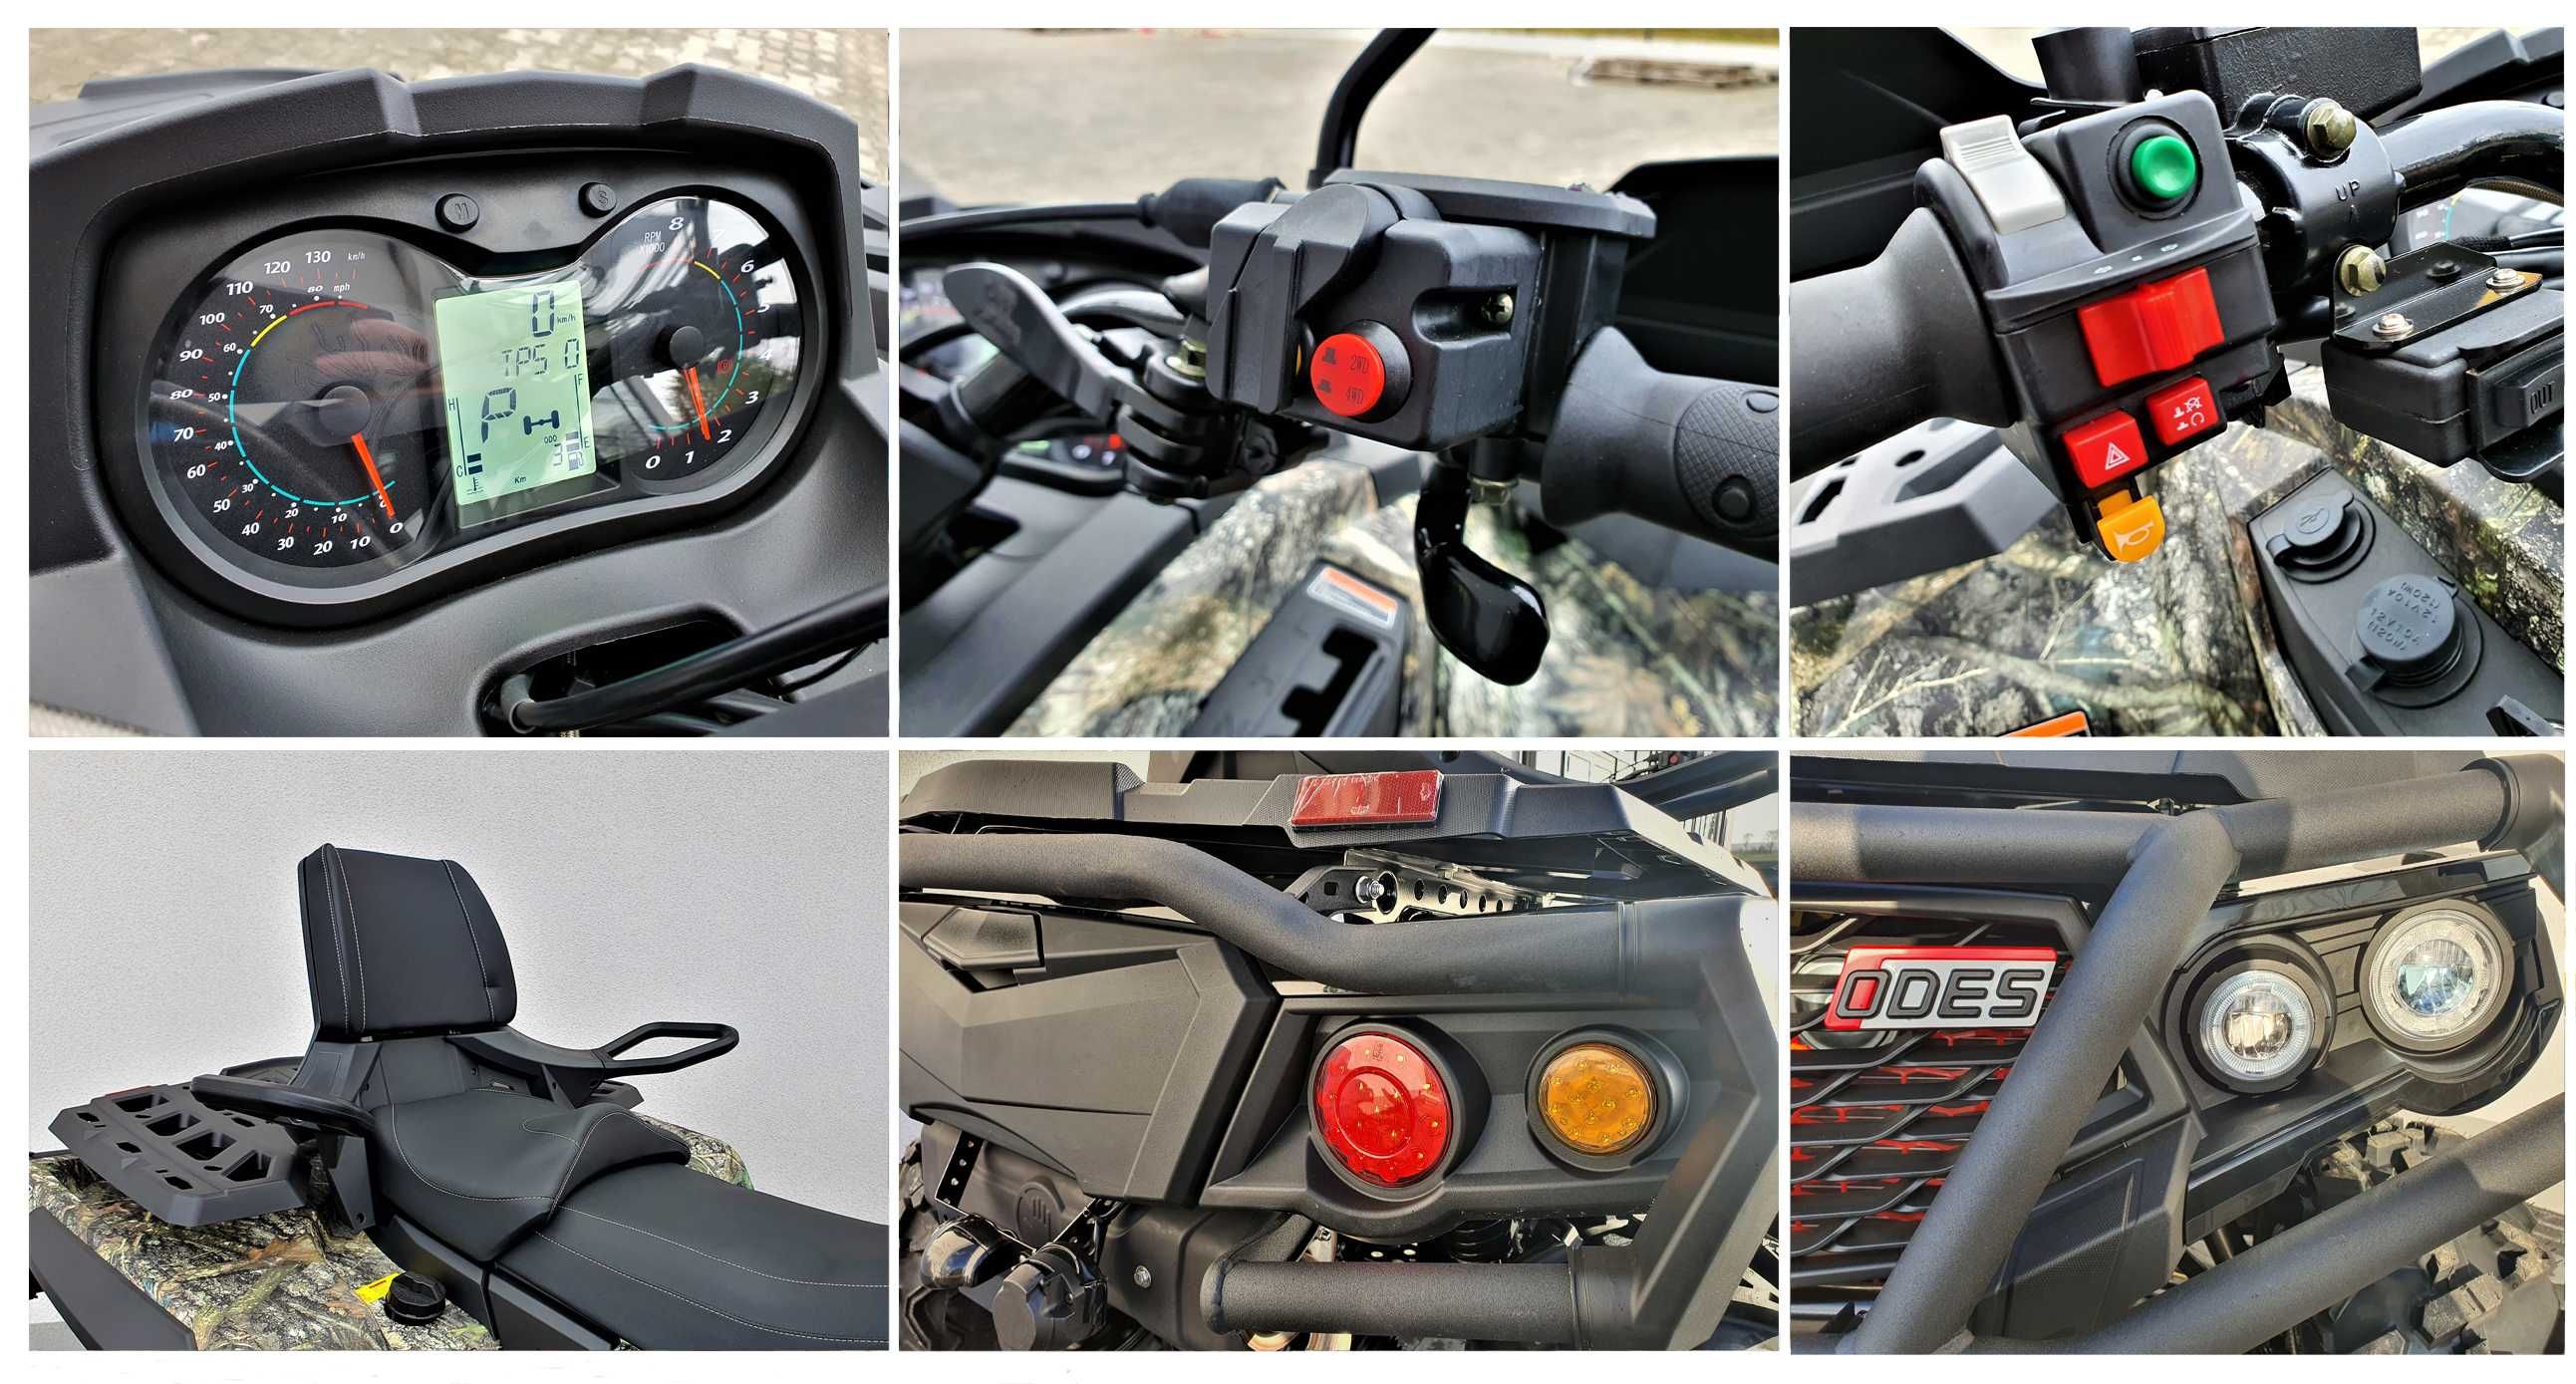 Promocja Kufer Gratis !! ODES Pathcross 650cc MaxPRO ODLICZ VAT23%